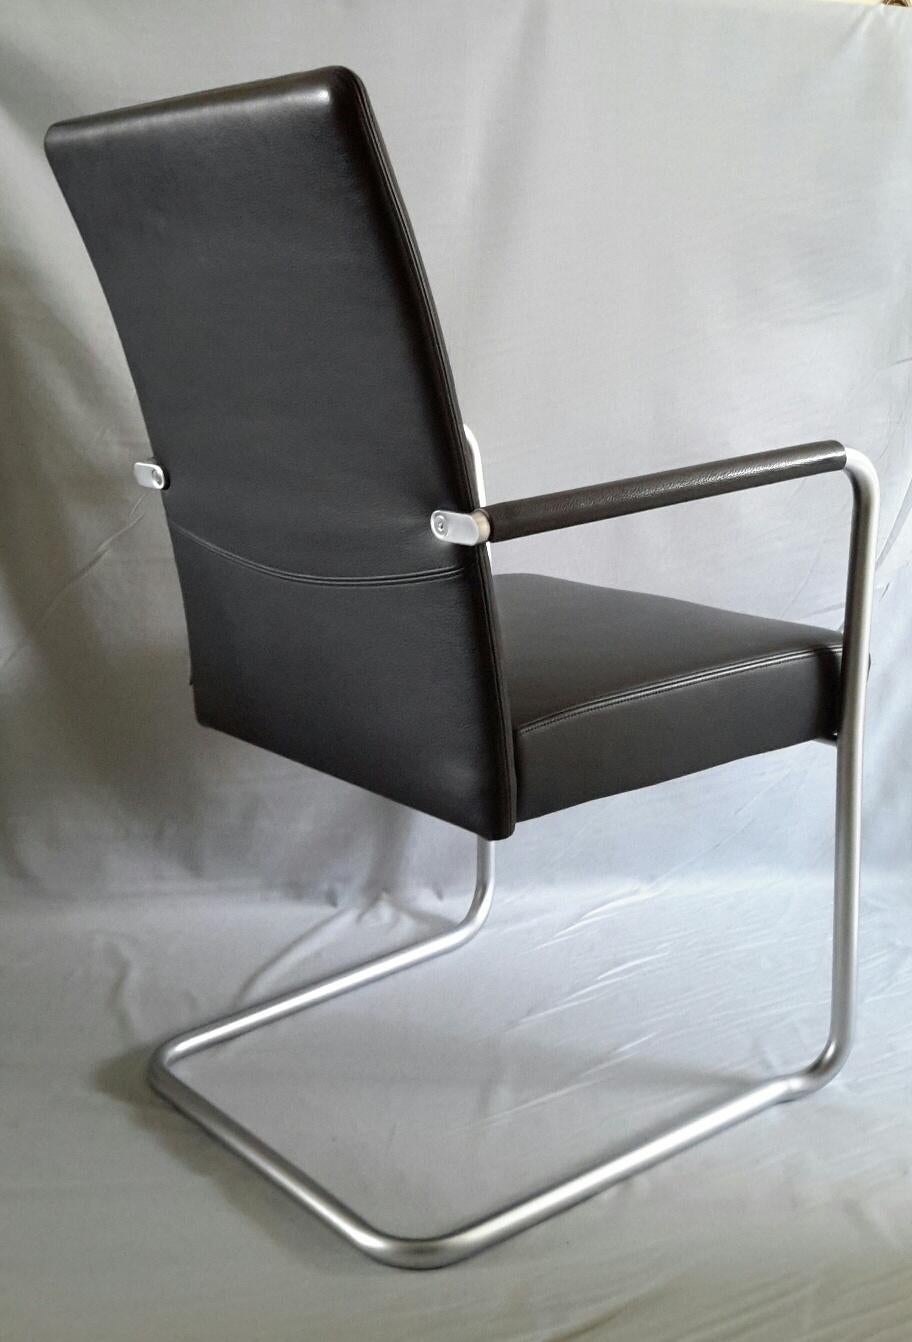 Vier Walter Knoll Sessel Linie Jason (1997) Design vom österreichischen Studio EOOS, in schwarzem genarbtem Leder mit eloxiertem Aluminium Struktur.
Die Sessel sind in neuwertigem Zustand.
Achtung: Preis für 1. Insgesamt 4 Sessel verfügbar.